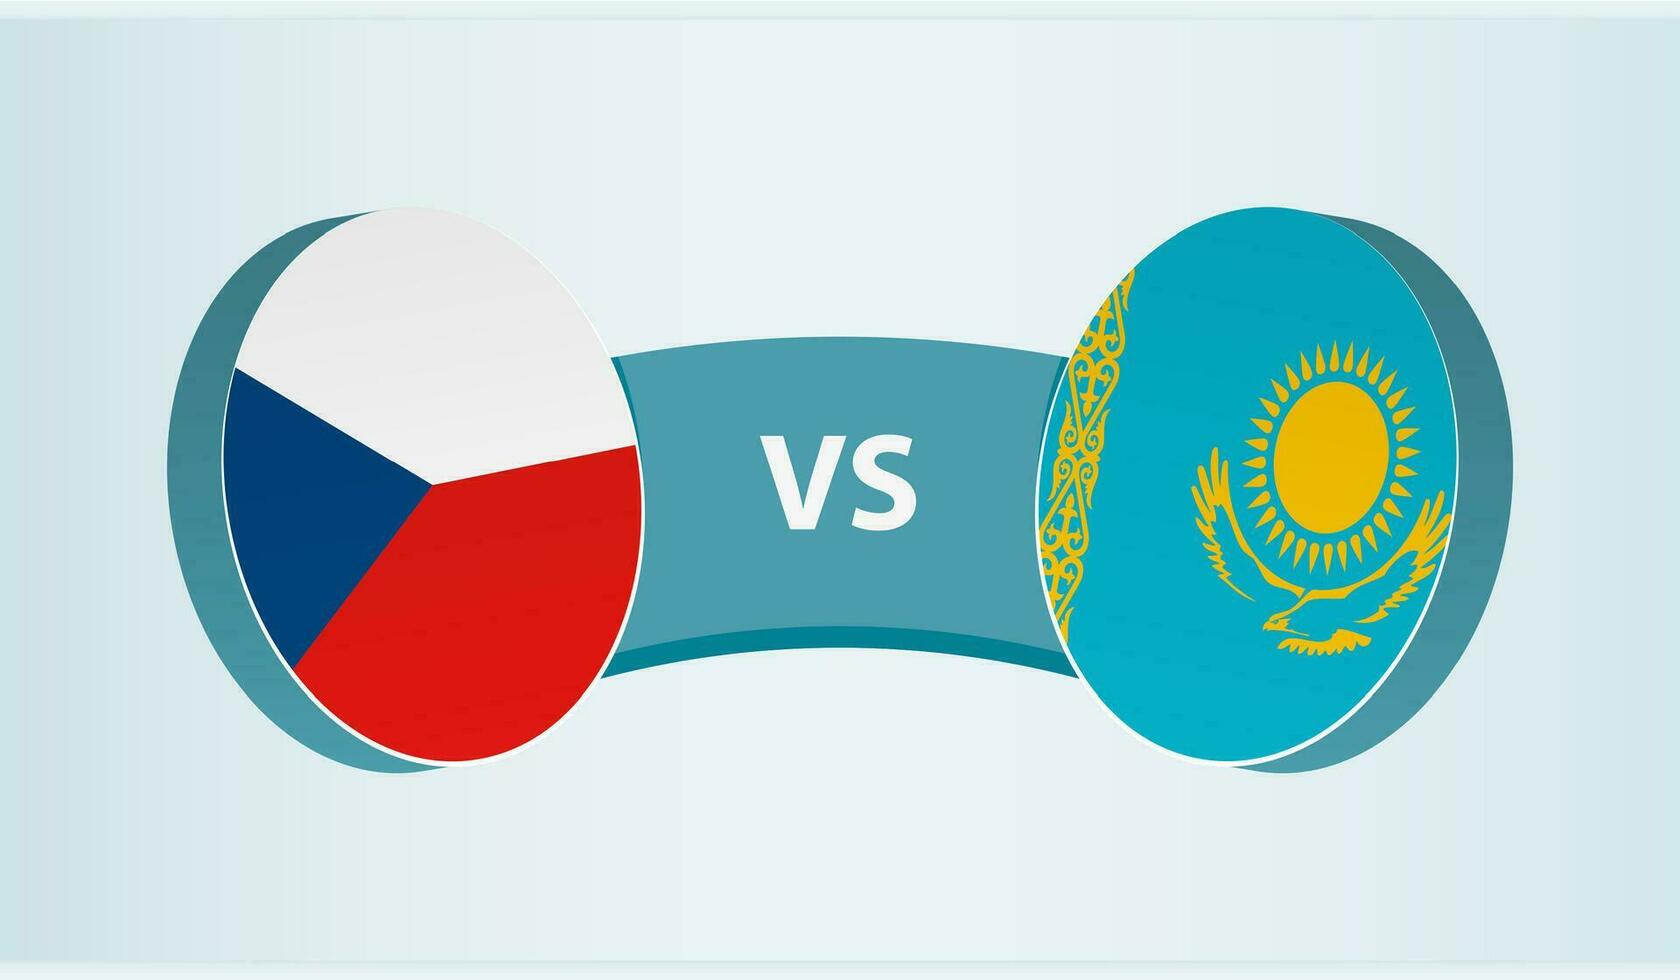 Czech Republic versus Kazakhstan, team sports competition concept. vector